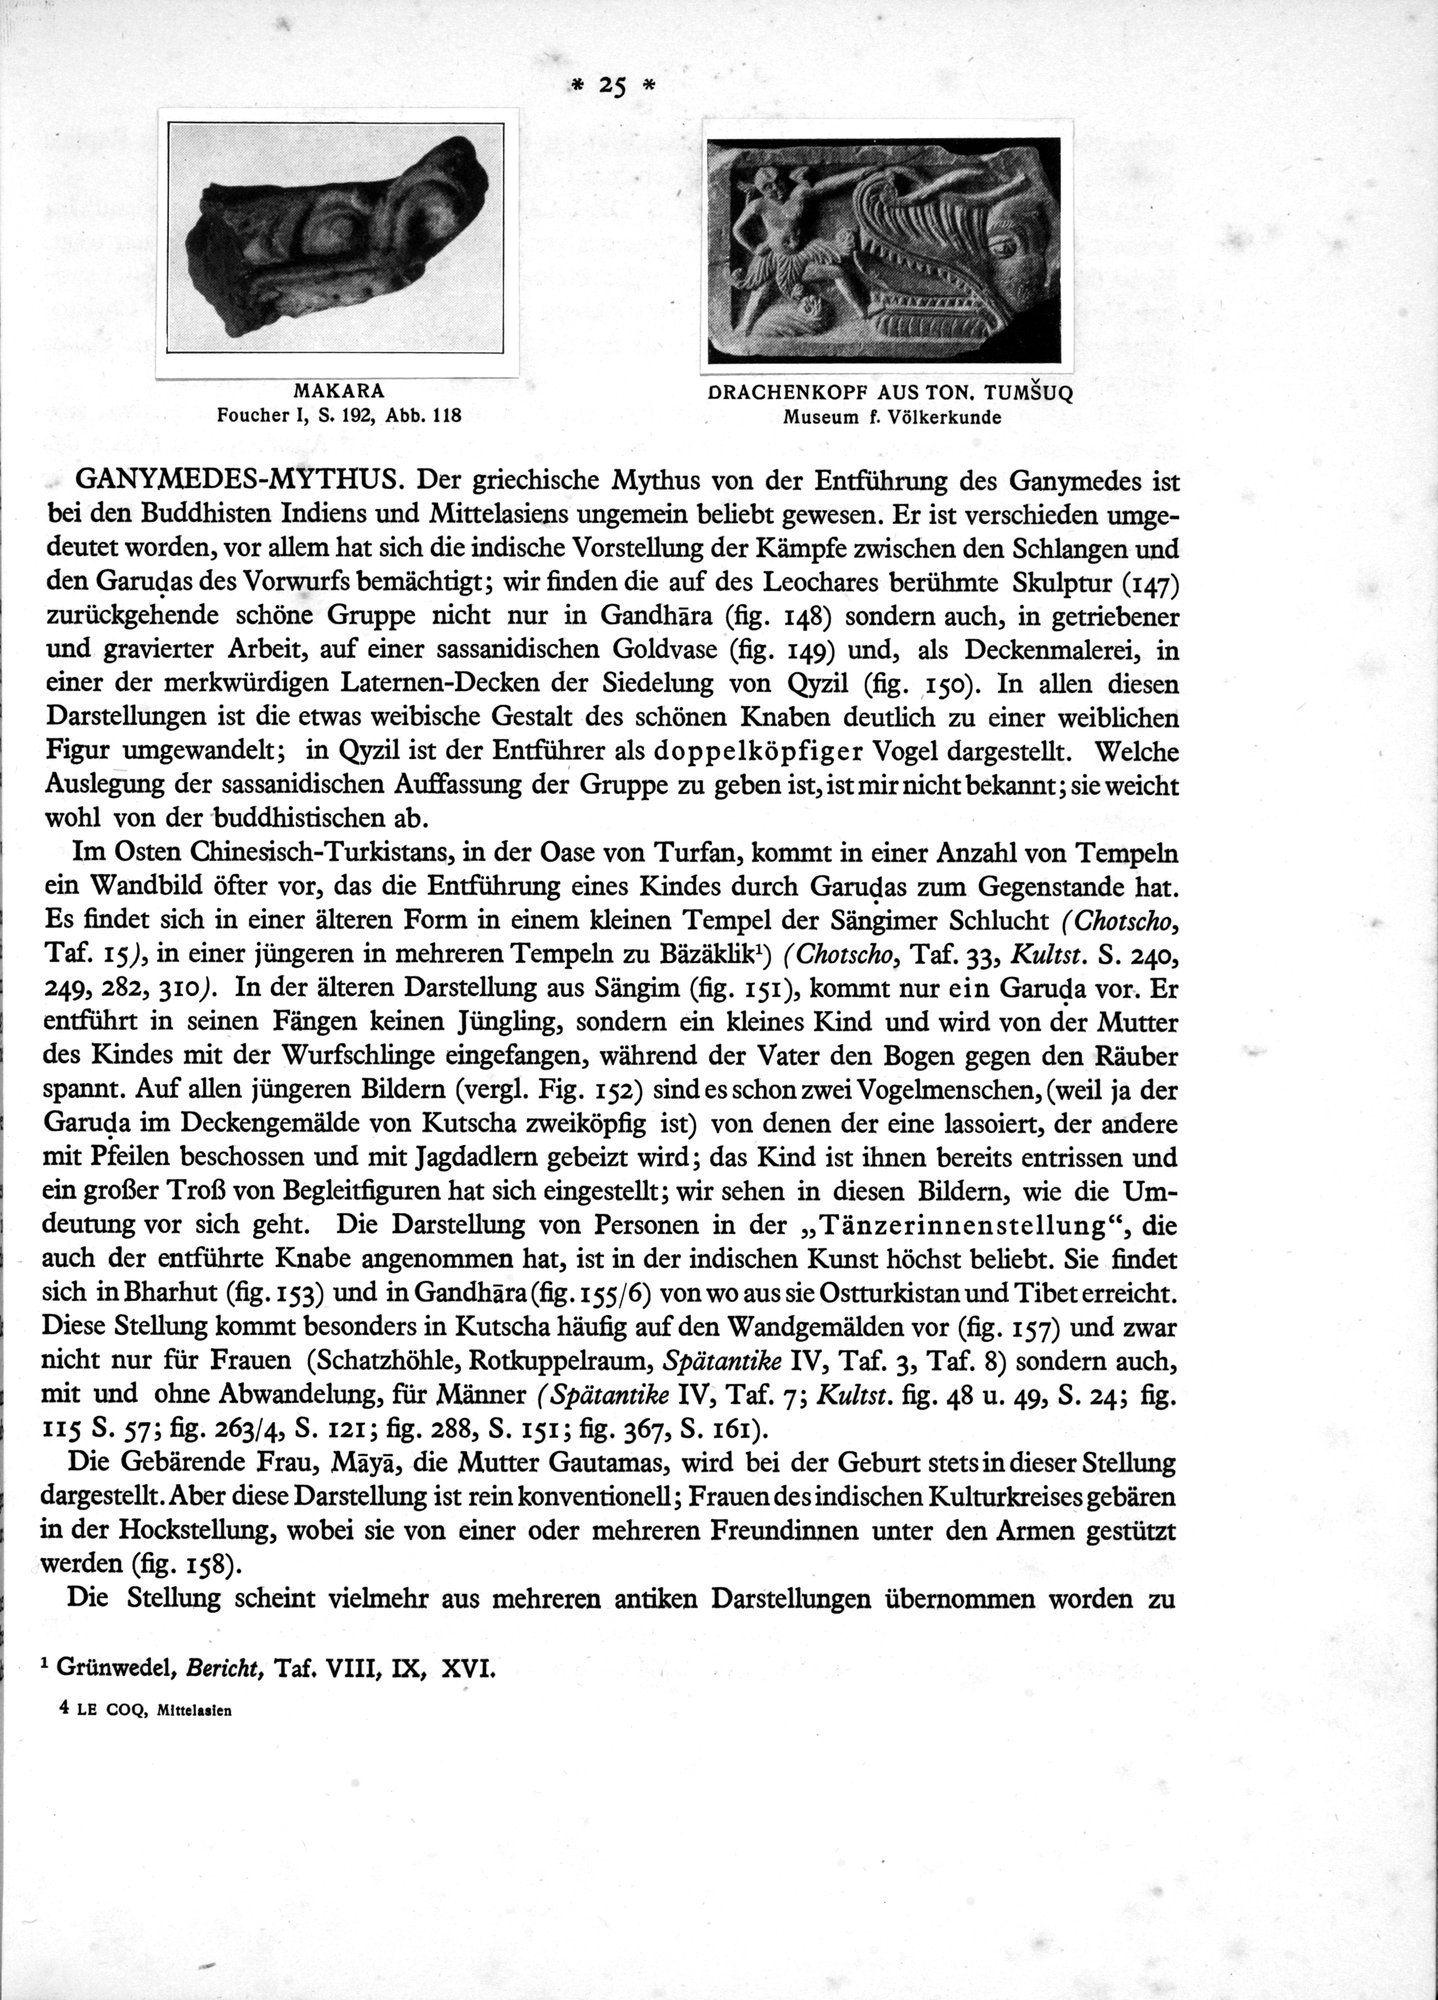 Bilderatlas zur Kunst und Kulturgeschichte Mittel-Asiens : vol.1 / Page 29 (Grayscale High Resolution Image)